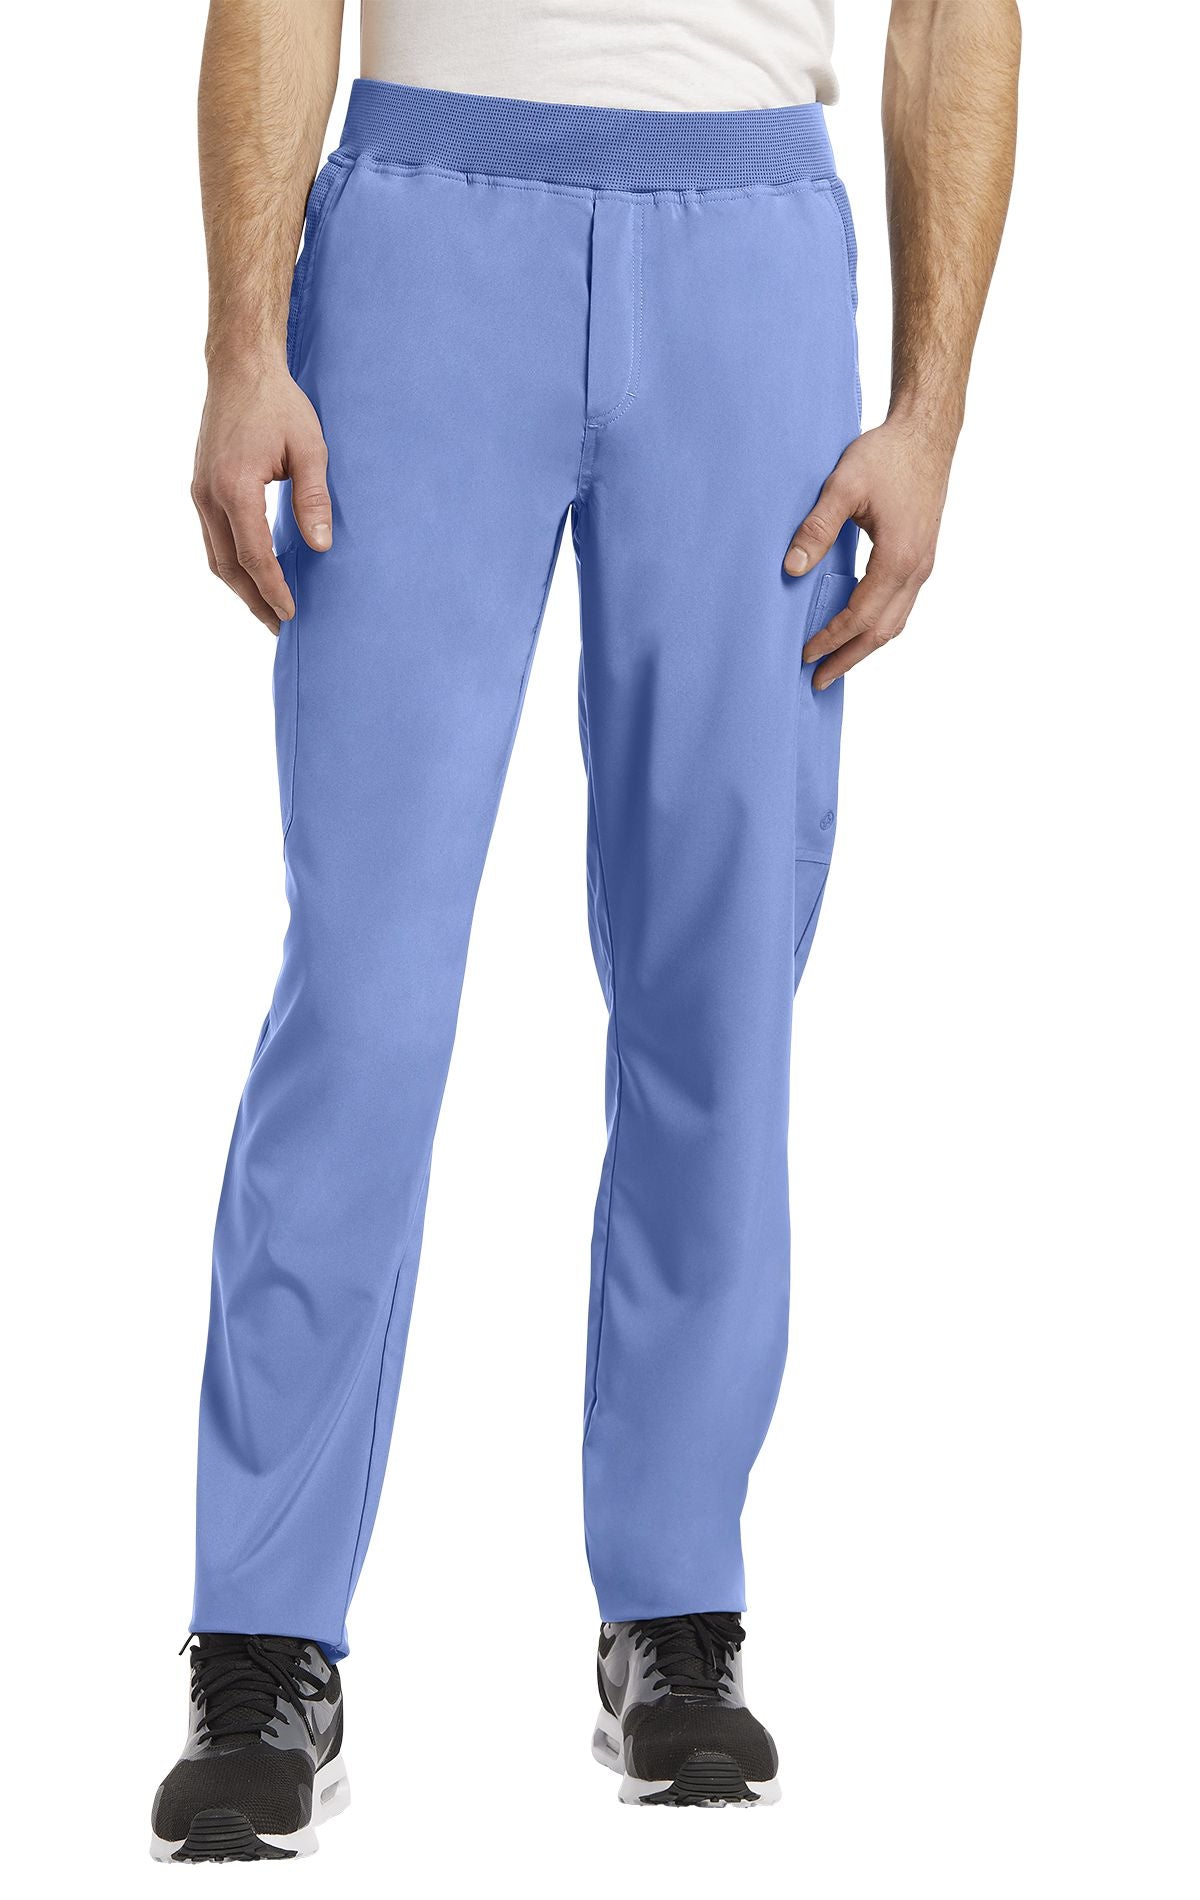 Pantalon de travail pour homme White Cross FIT #229 bleu ciel